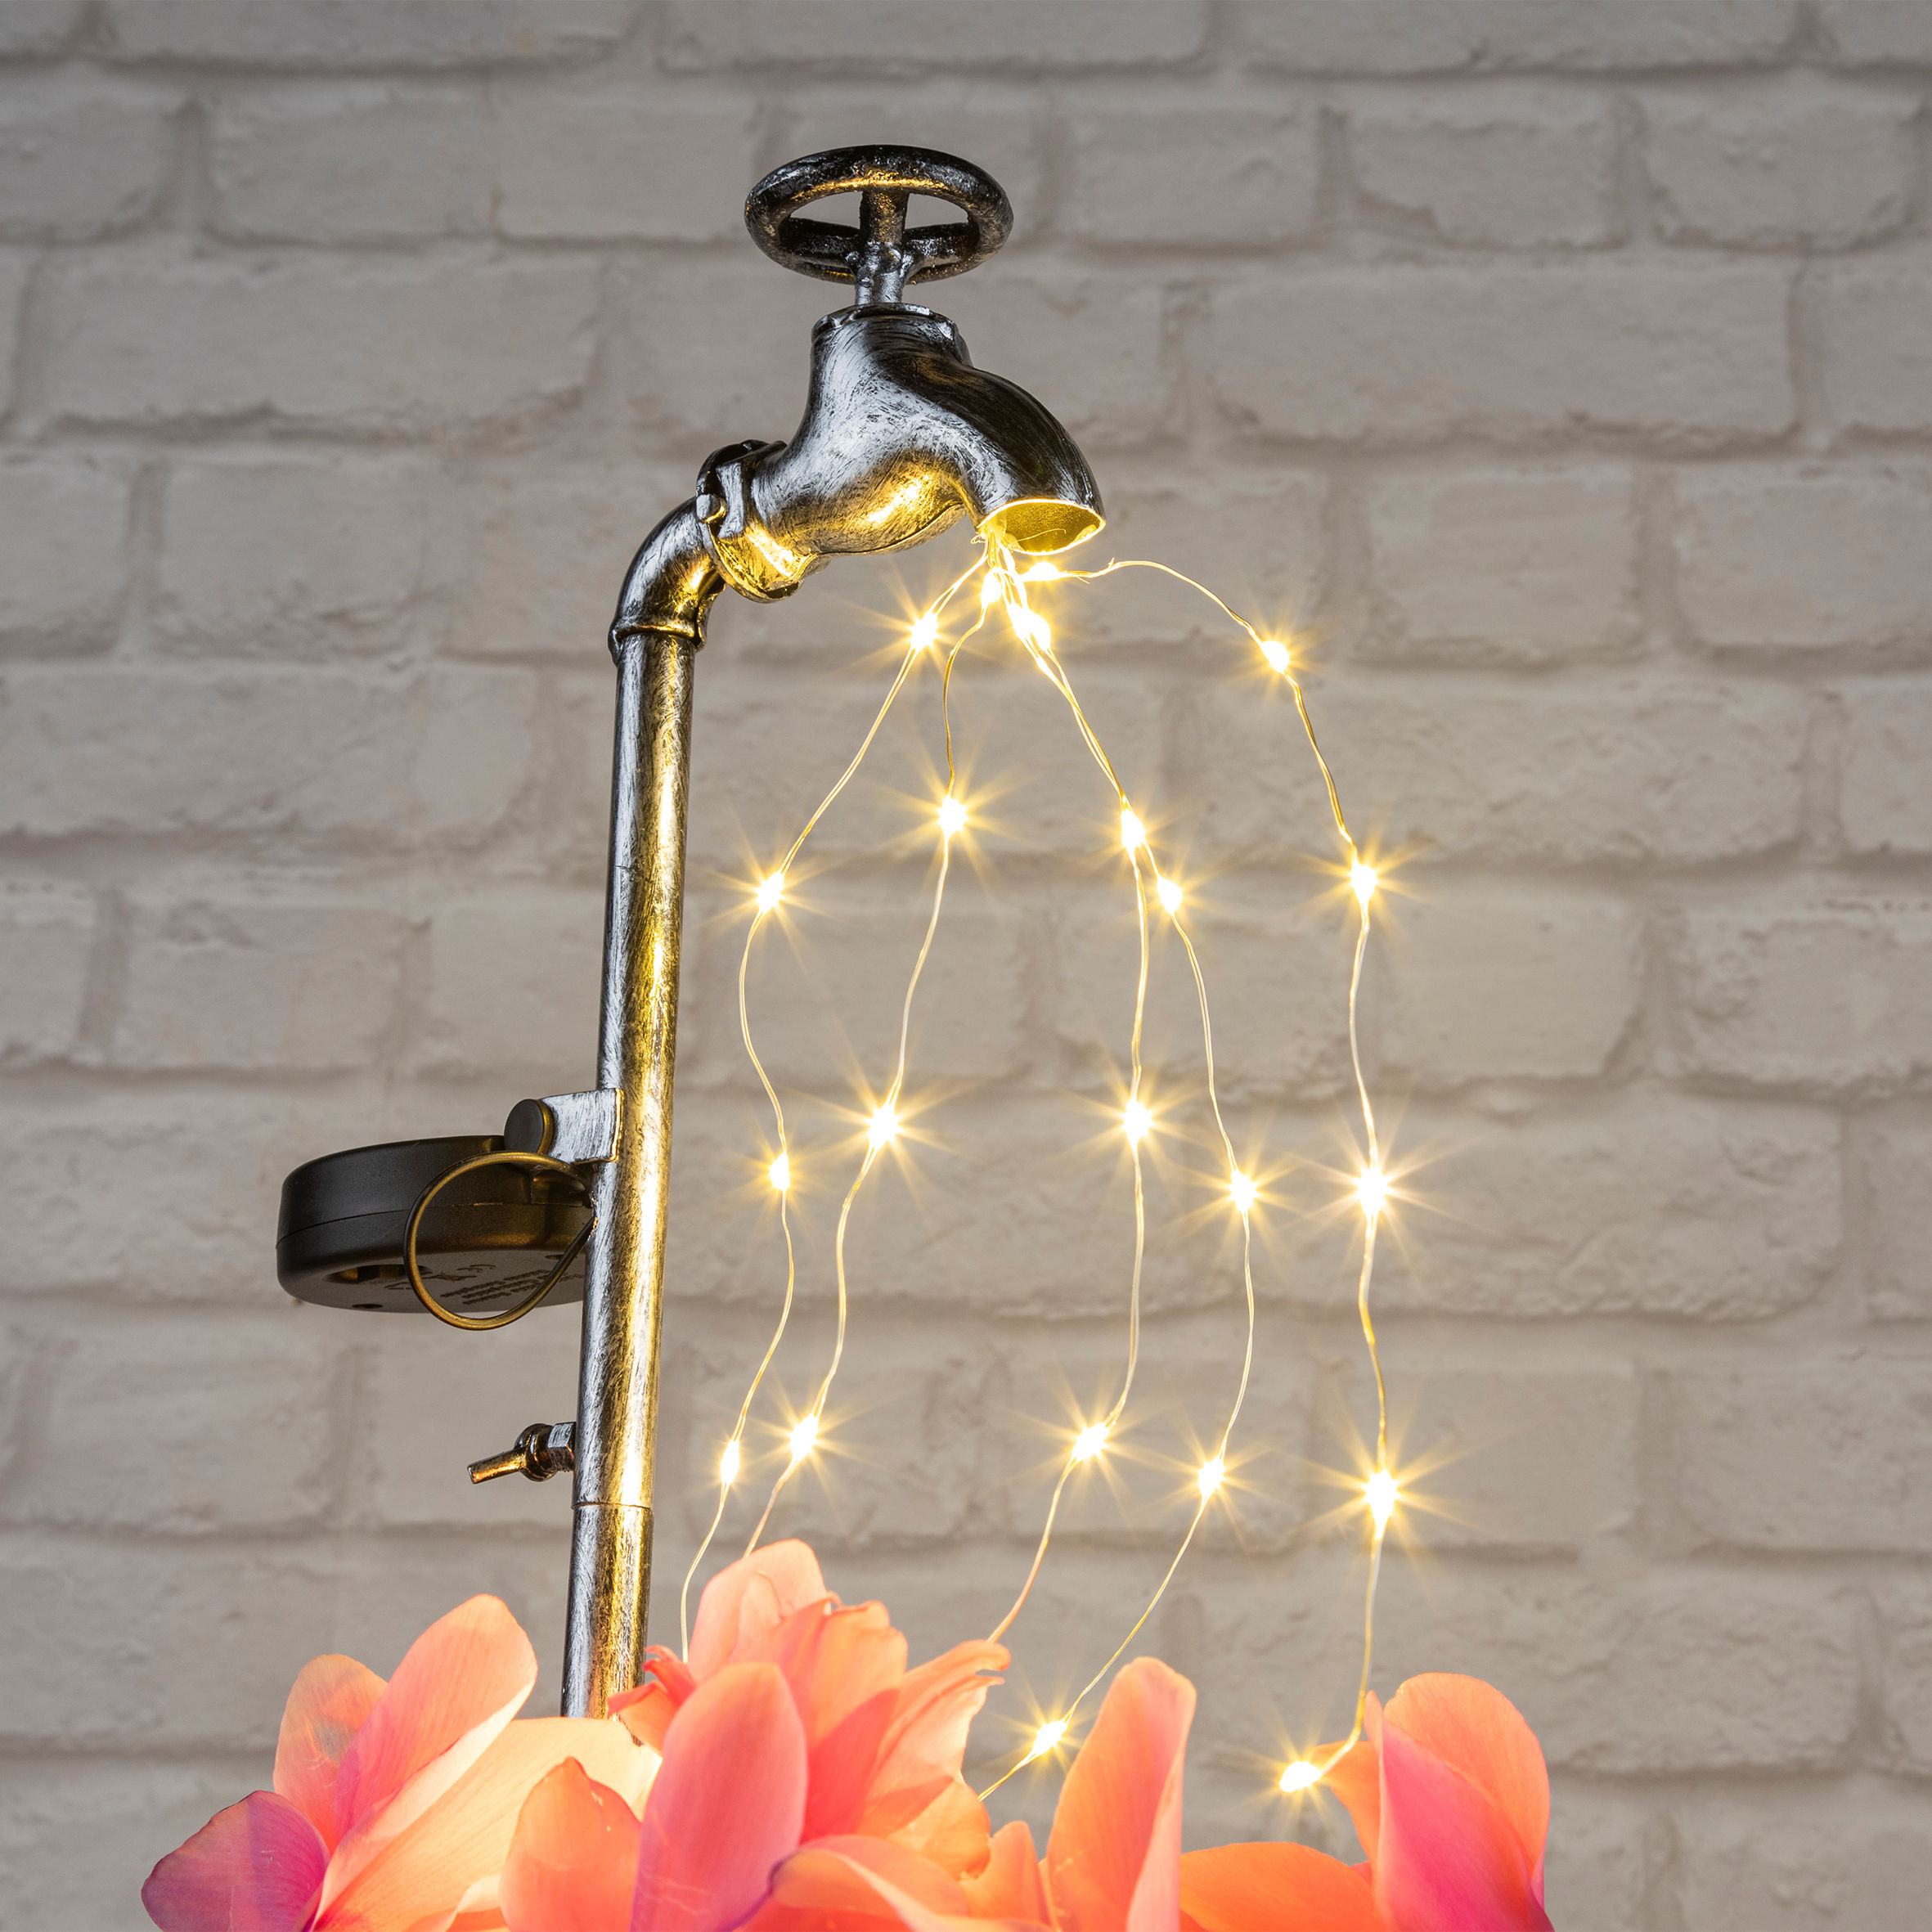 LED Solar Deko Wasserhahn mit Blumentopf - 60 x 17 cm - Garten Beleuchtung mit 30 LED in warm weiß - inklusive Pflanztopf mit Halter